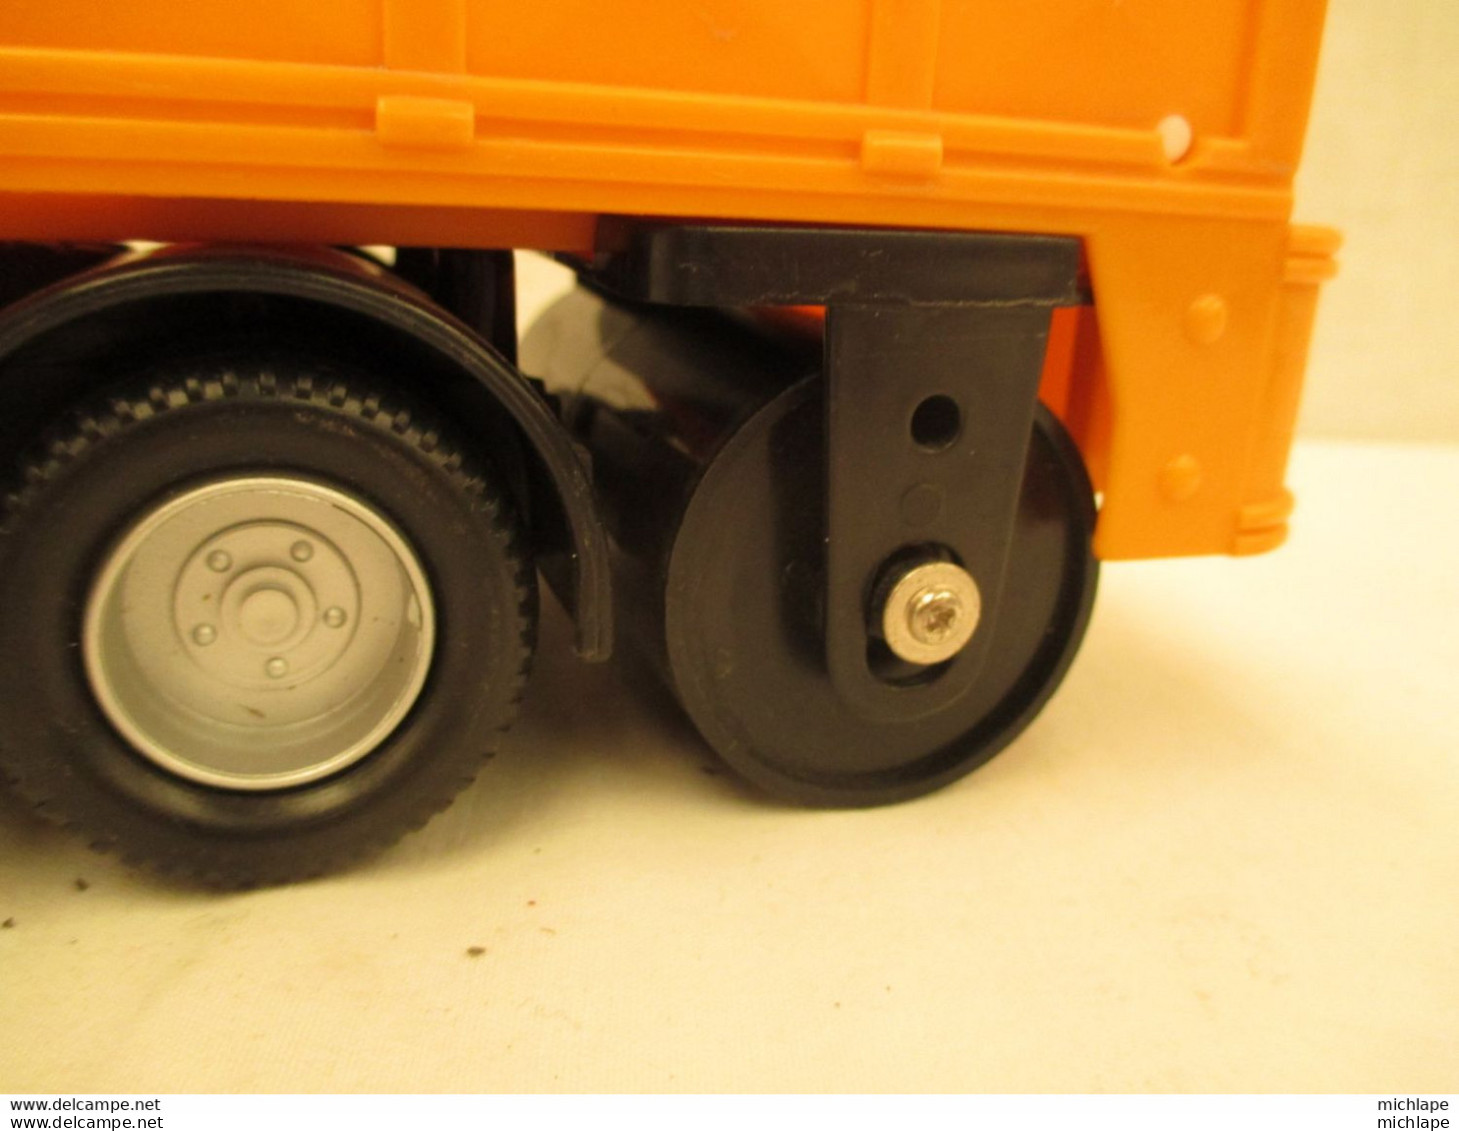 camion de chantier miniature - moteur a friction fonctionne - 30 cm sur 10 cm